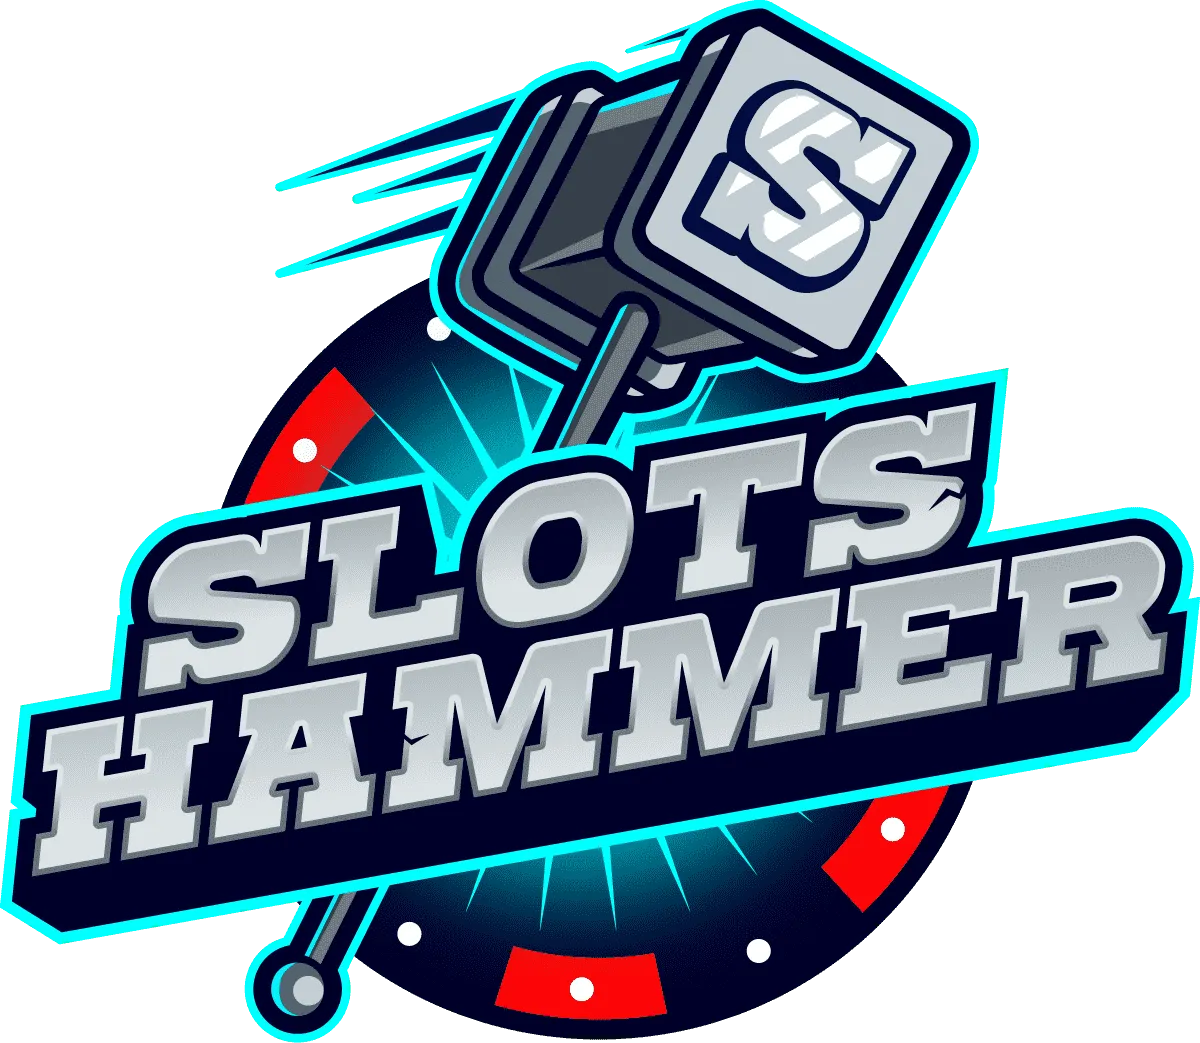 Slots Hammer Casino बोनस: सप्ताहांत 10% कैशबैक ऑफ़र।
